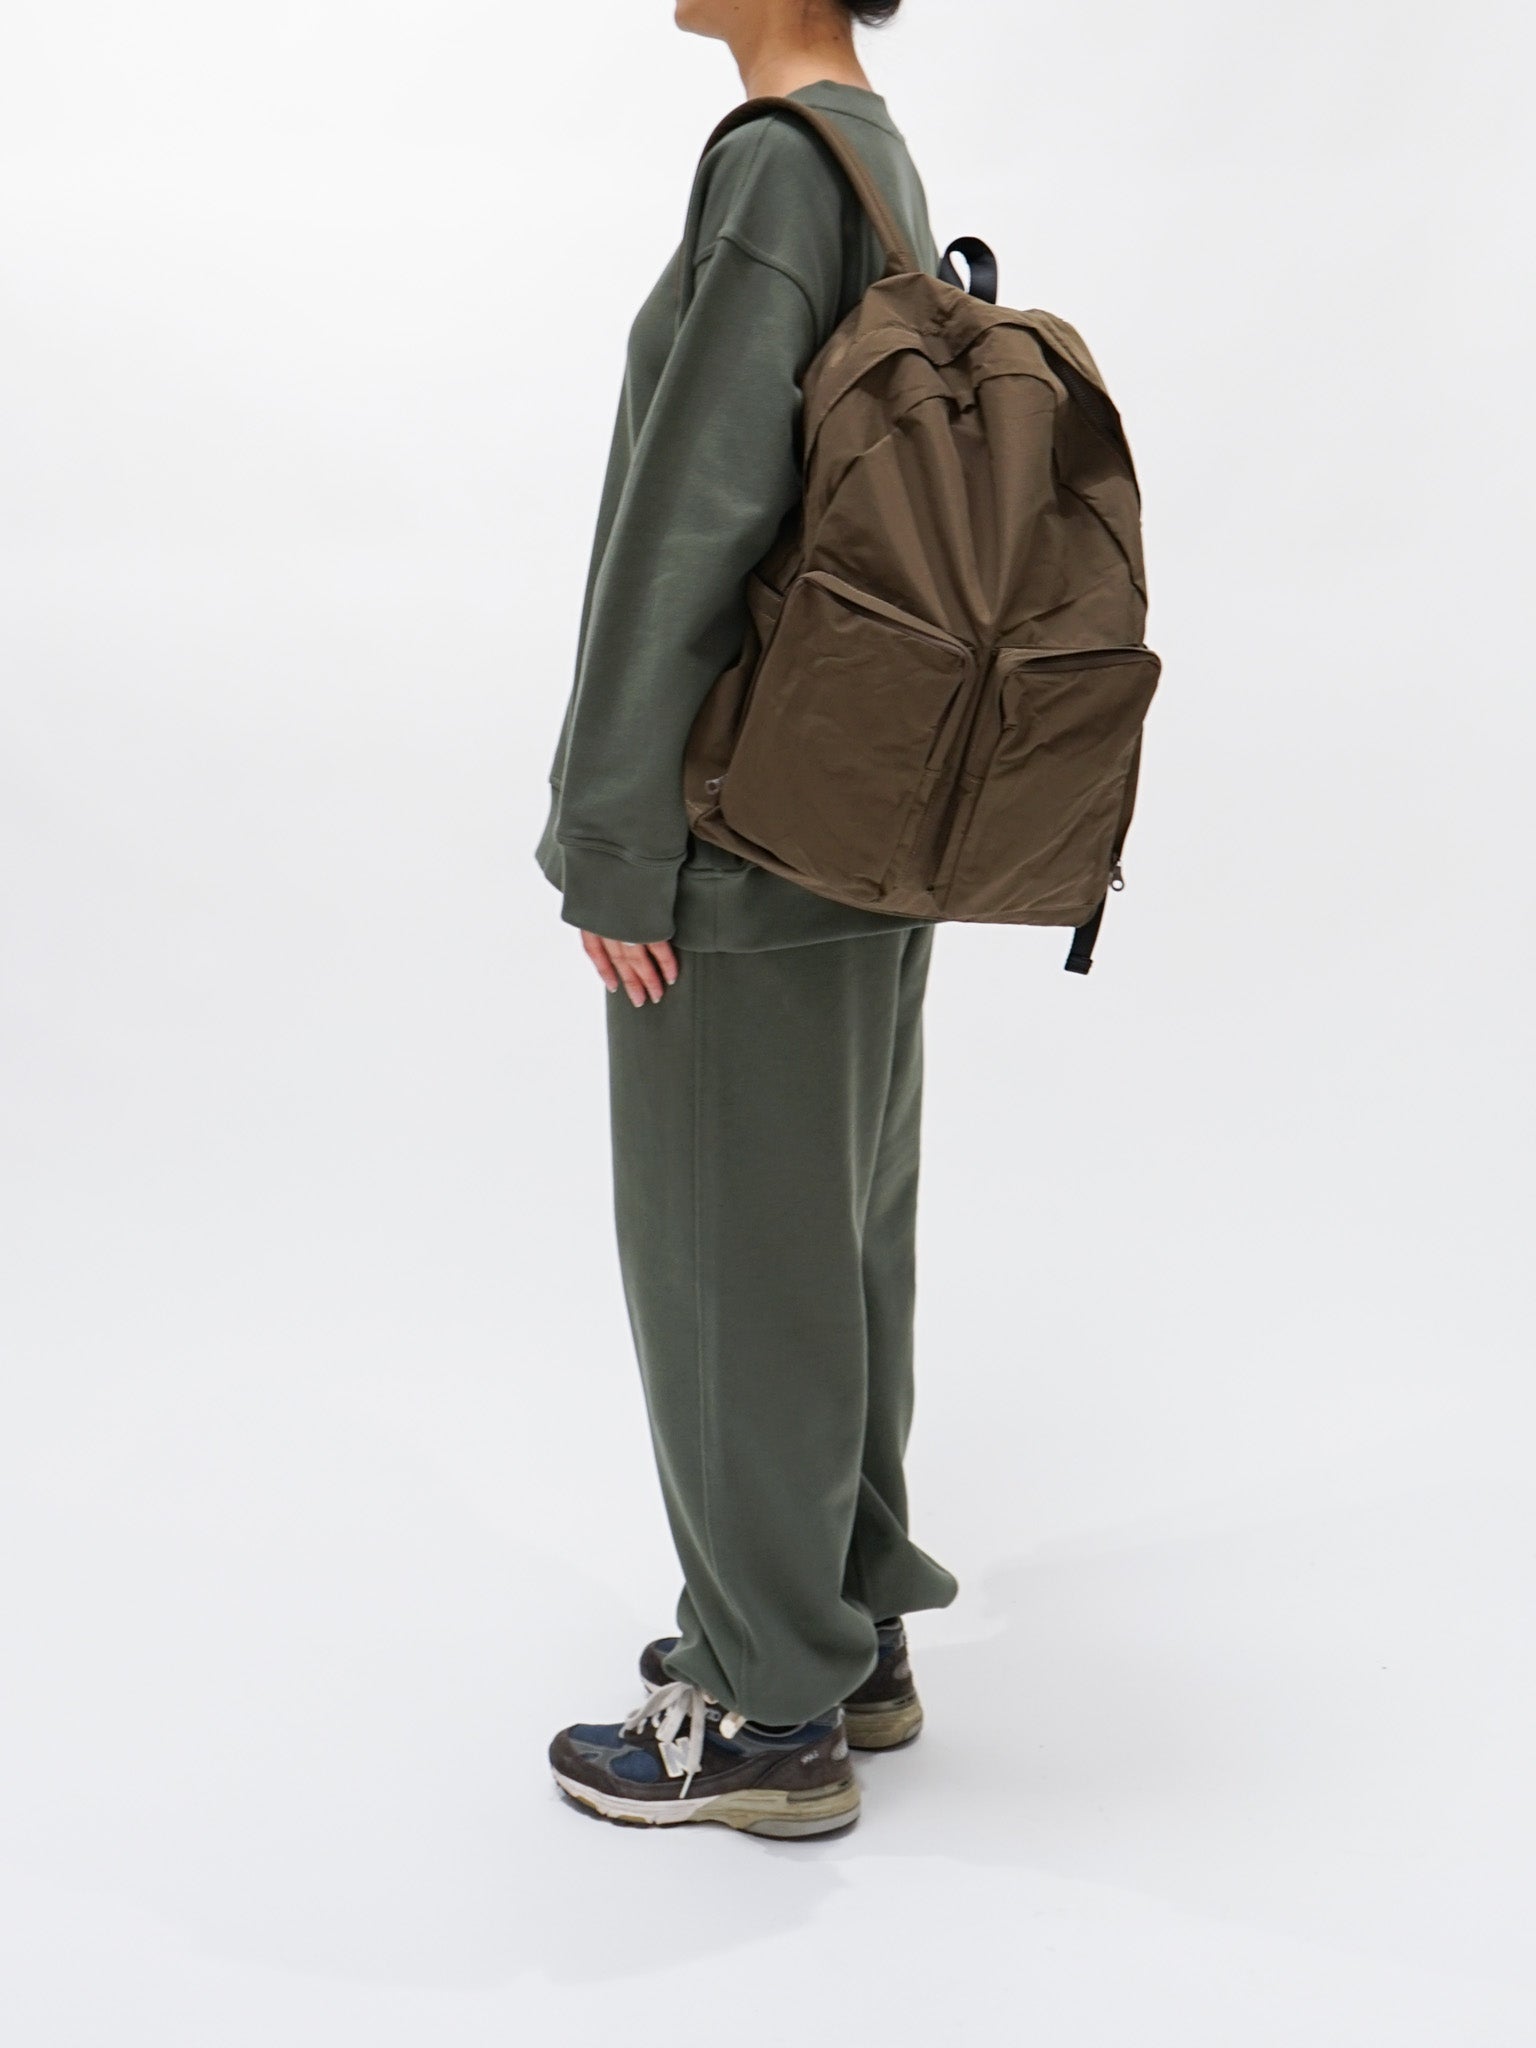 Namu Shop - Amiacalva N/C Cloth Backpack - Khaki